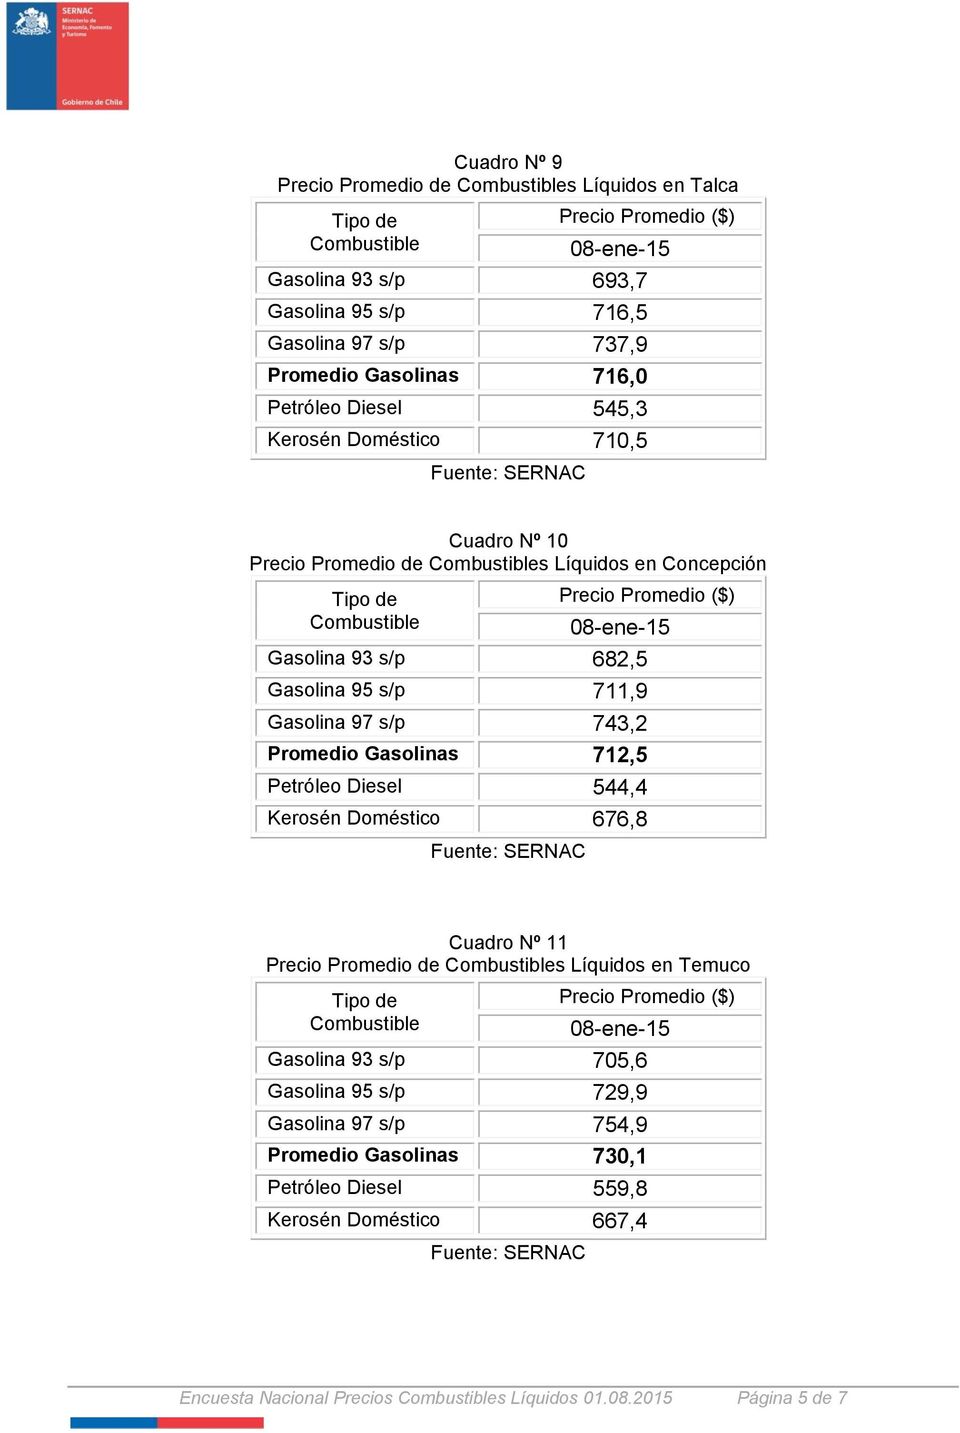 Promedio Gasolinas 712,5 Petróleo Diesel 544,4 Kerosén Doméstico 676,8 Cuadro Nº 11 Precio Promedio de s Líquidos en Temuco Gasolina 93 s/p 705,6 Gasolina 95